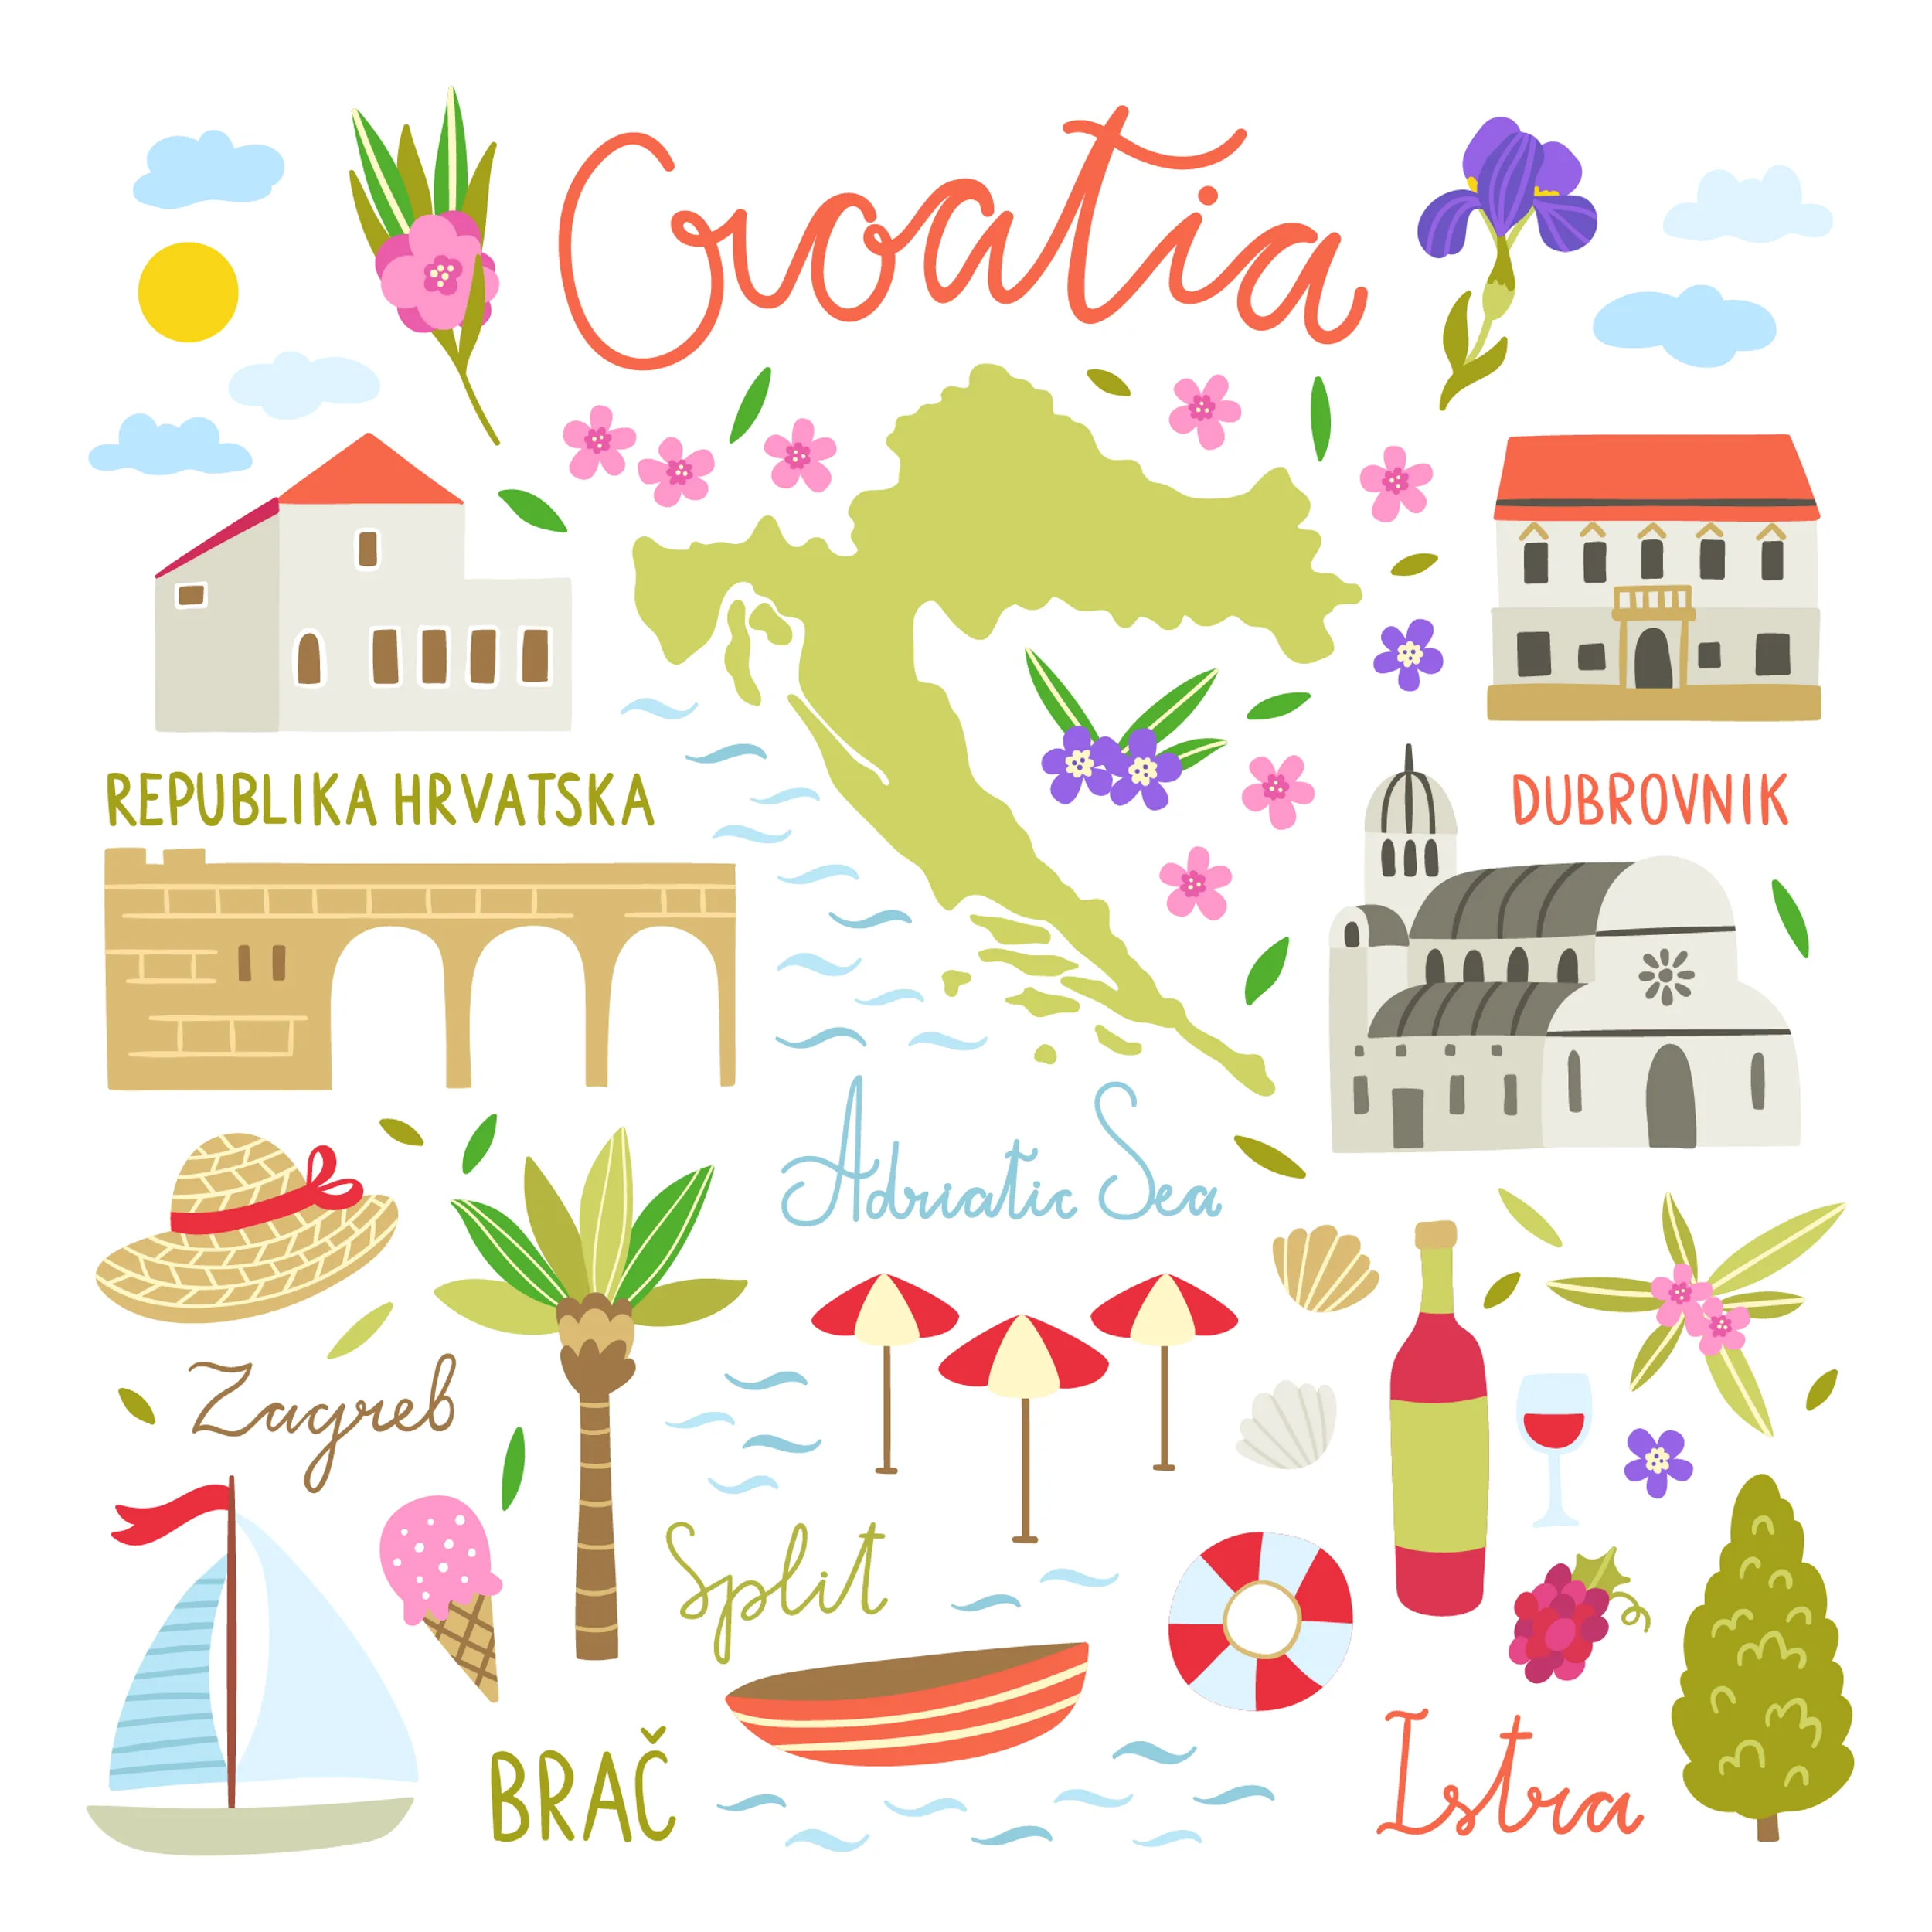 illustrierte Landkarte von Kroatien